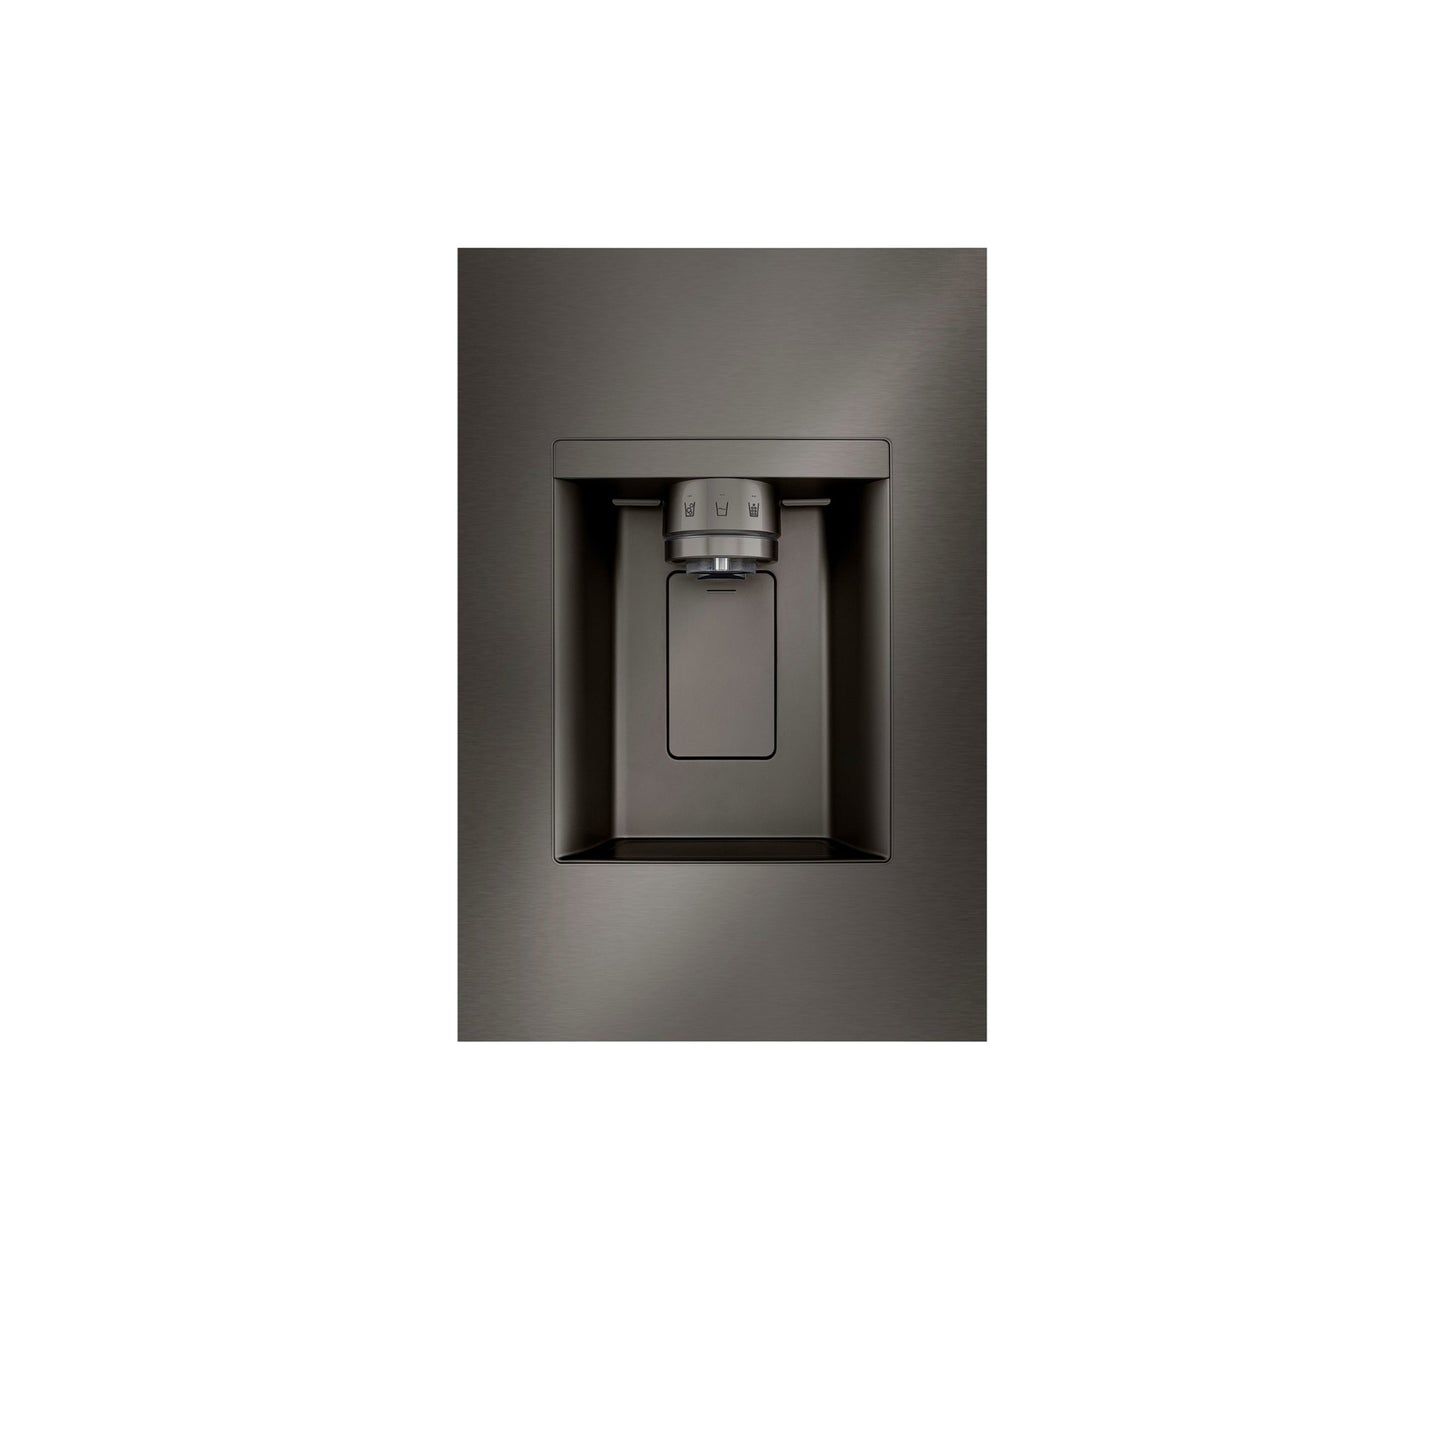 31 متر مكعب. قدم. ثلاجة Smart Standard-Depth MAX™ بباب فرنسي مع أربعة أنواع من الثلج ومرآة InstaView® 